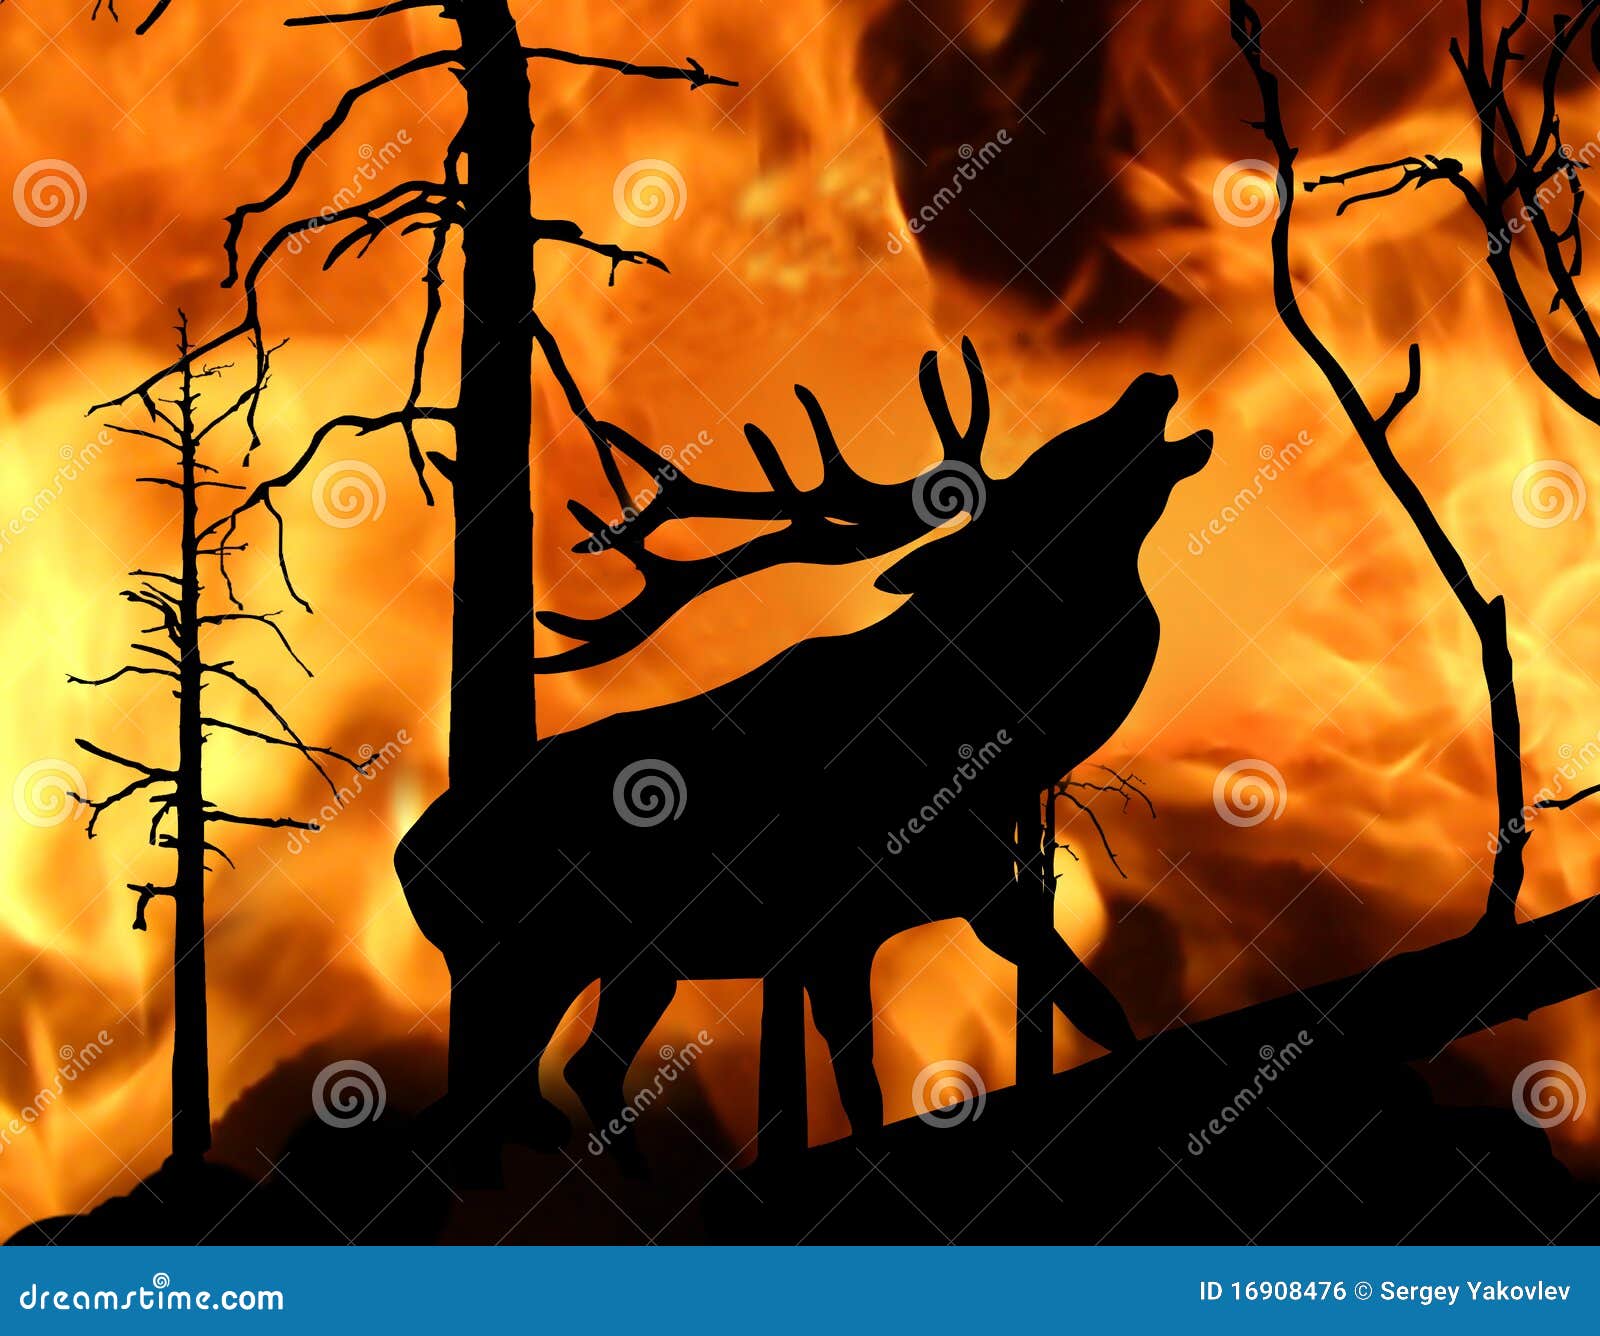 Огонь оленя. Горящий лес с животными. Олень в горящем лесу. Олень и пожар. Пожар в лесу с животными.